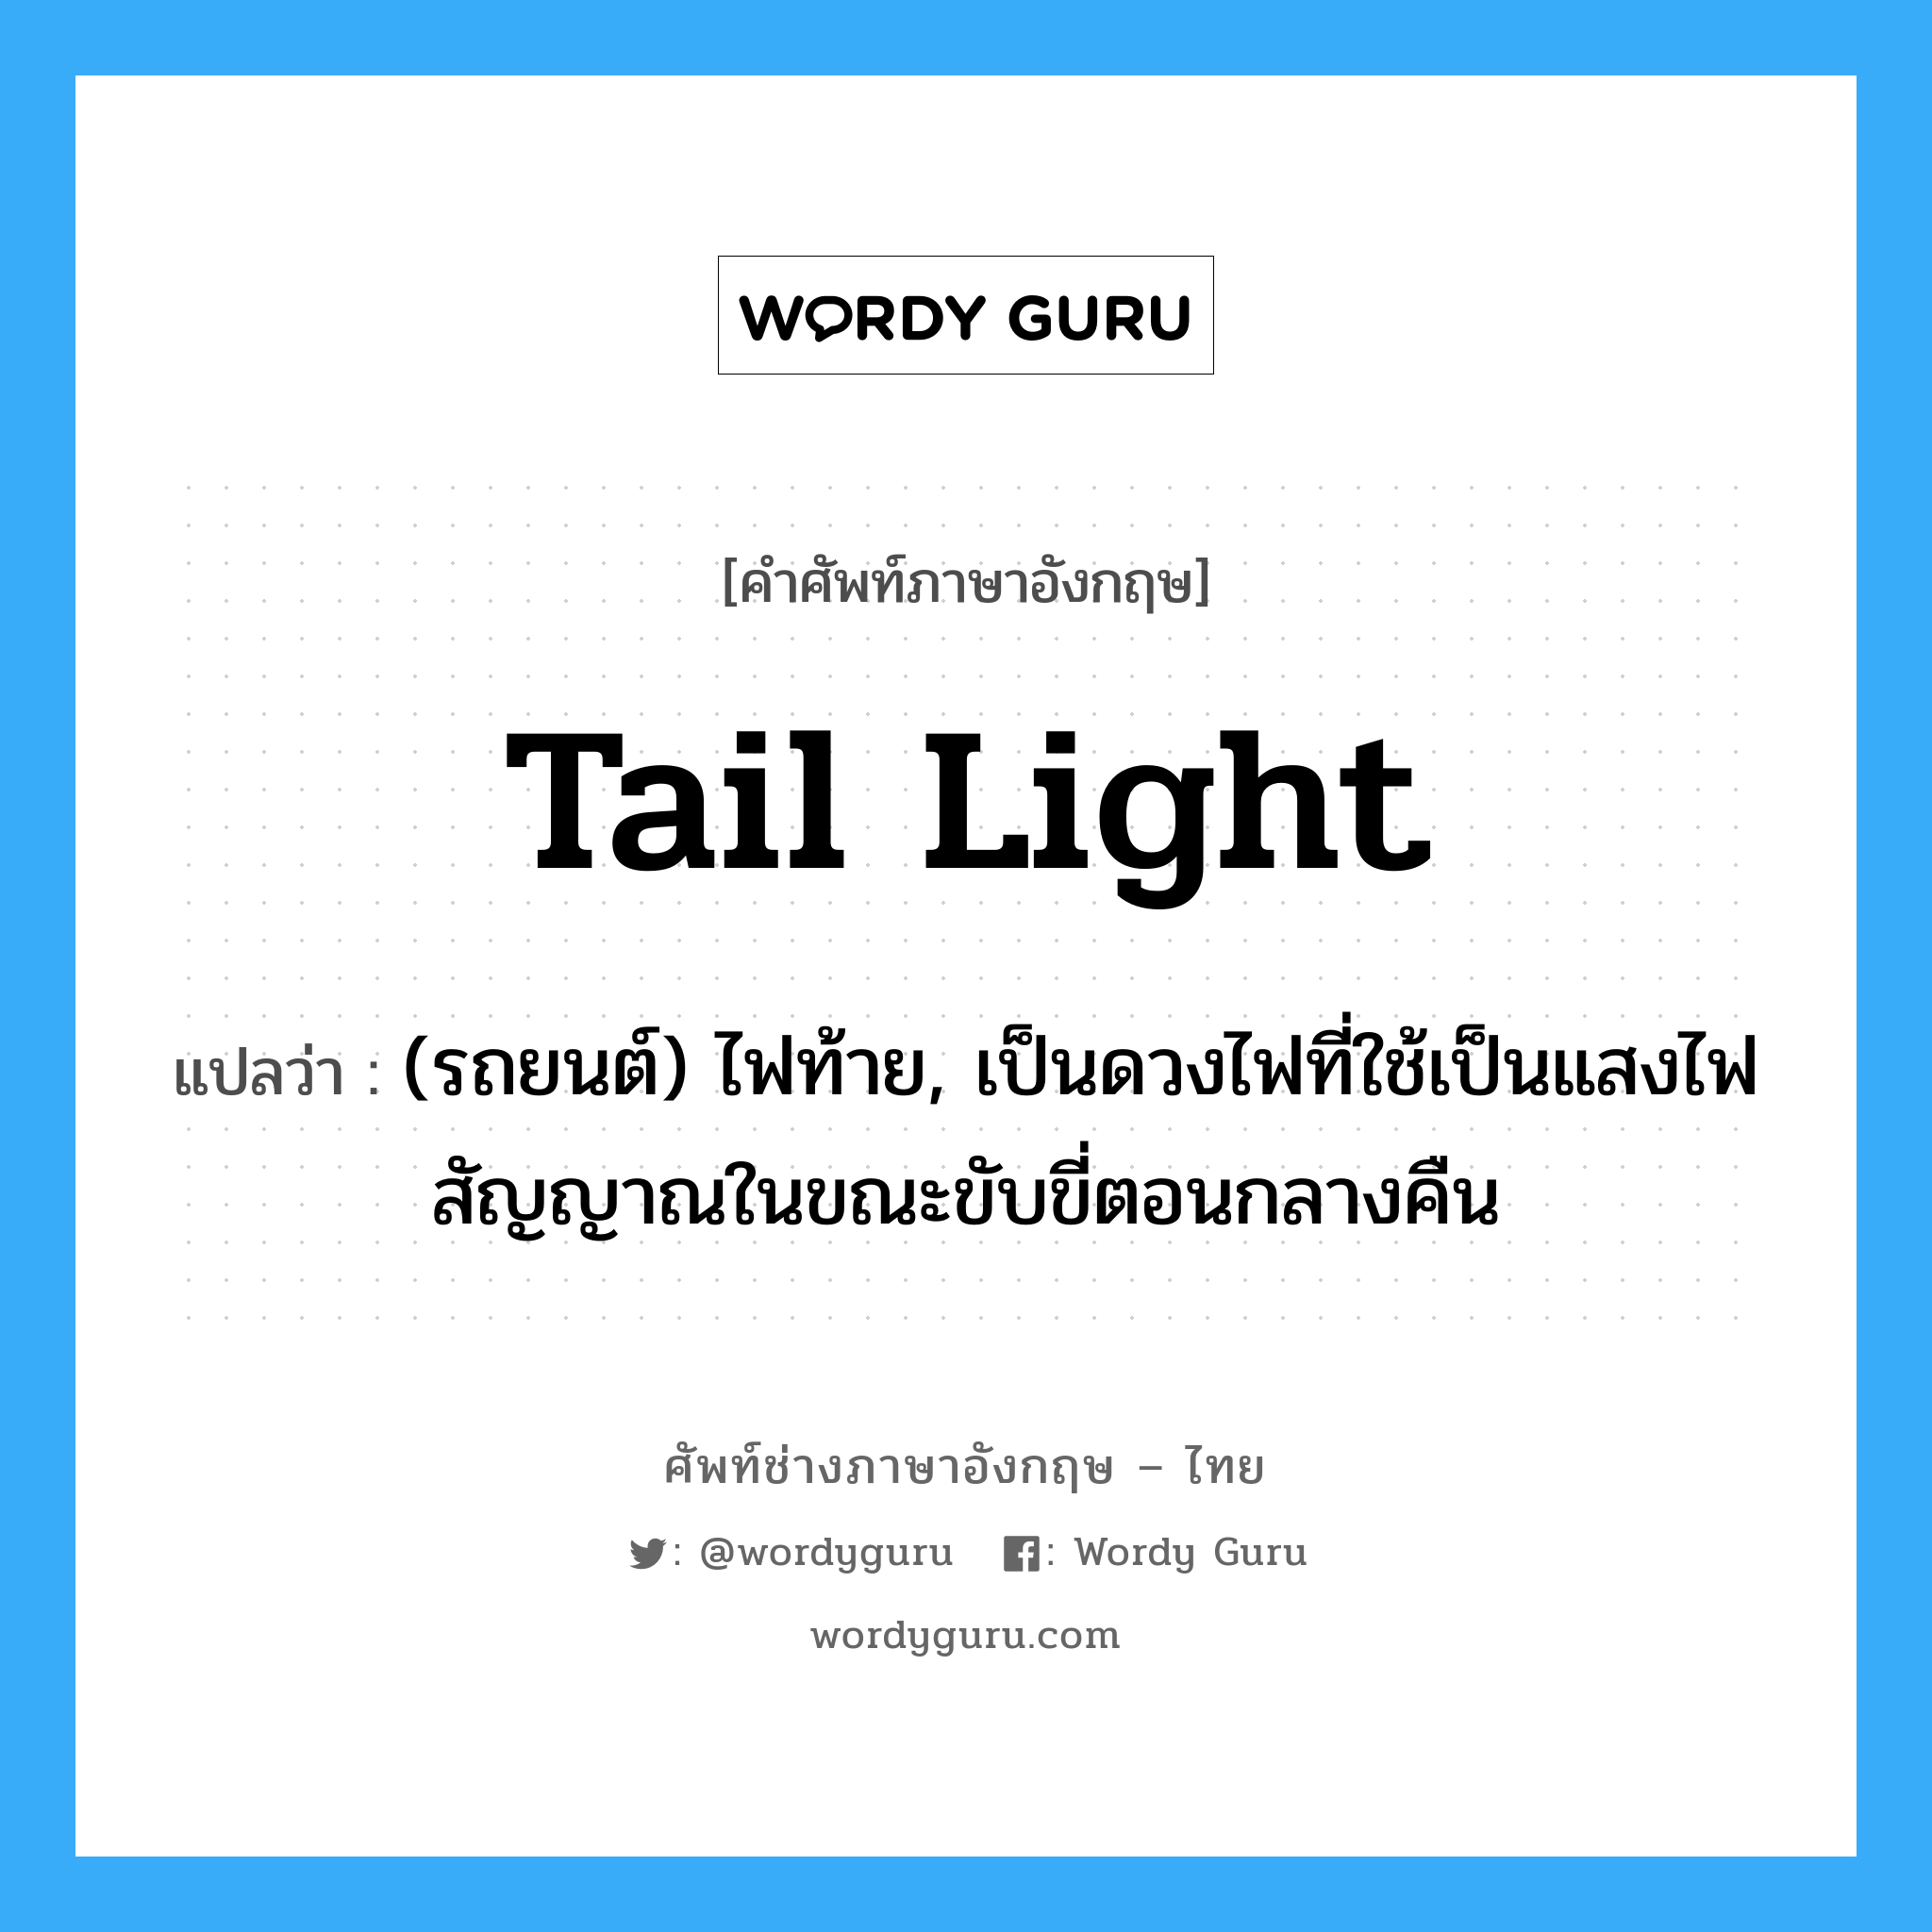 tail light แปลว่า?, คำศัพท์ช่างภาษาอังกฤษ - ไทย tail light คำศัพท์ภาษาอังกฤษ tail light แปลว่า (รถยนต์) ไฟท้าย, เป็นดวงไฟที่ใช้เป็นแสงไฟสัญญาณในขณะขับขี่ตอนกลางคืน